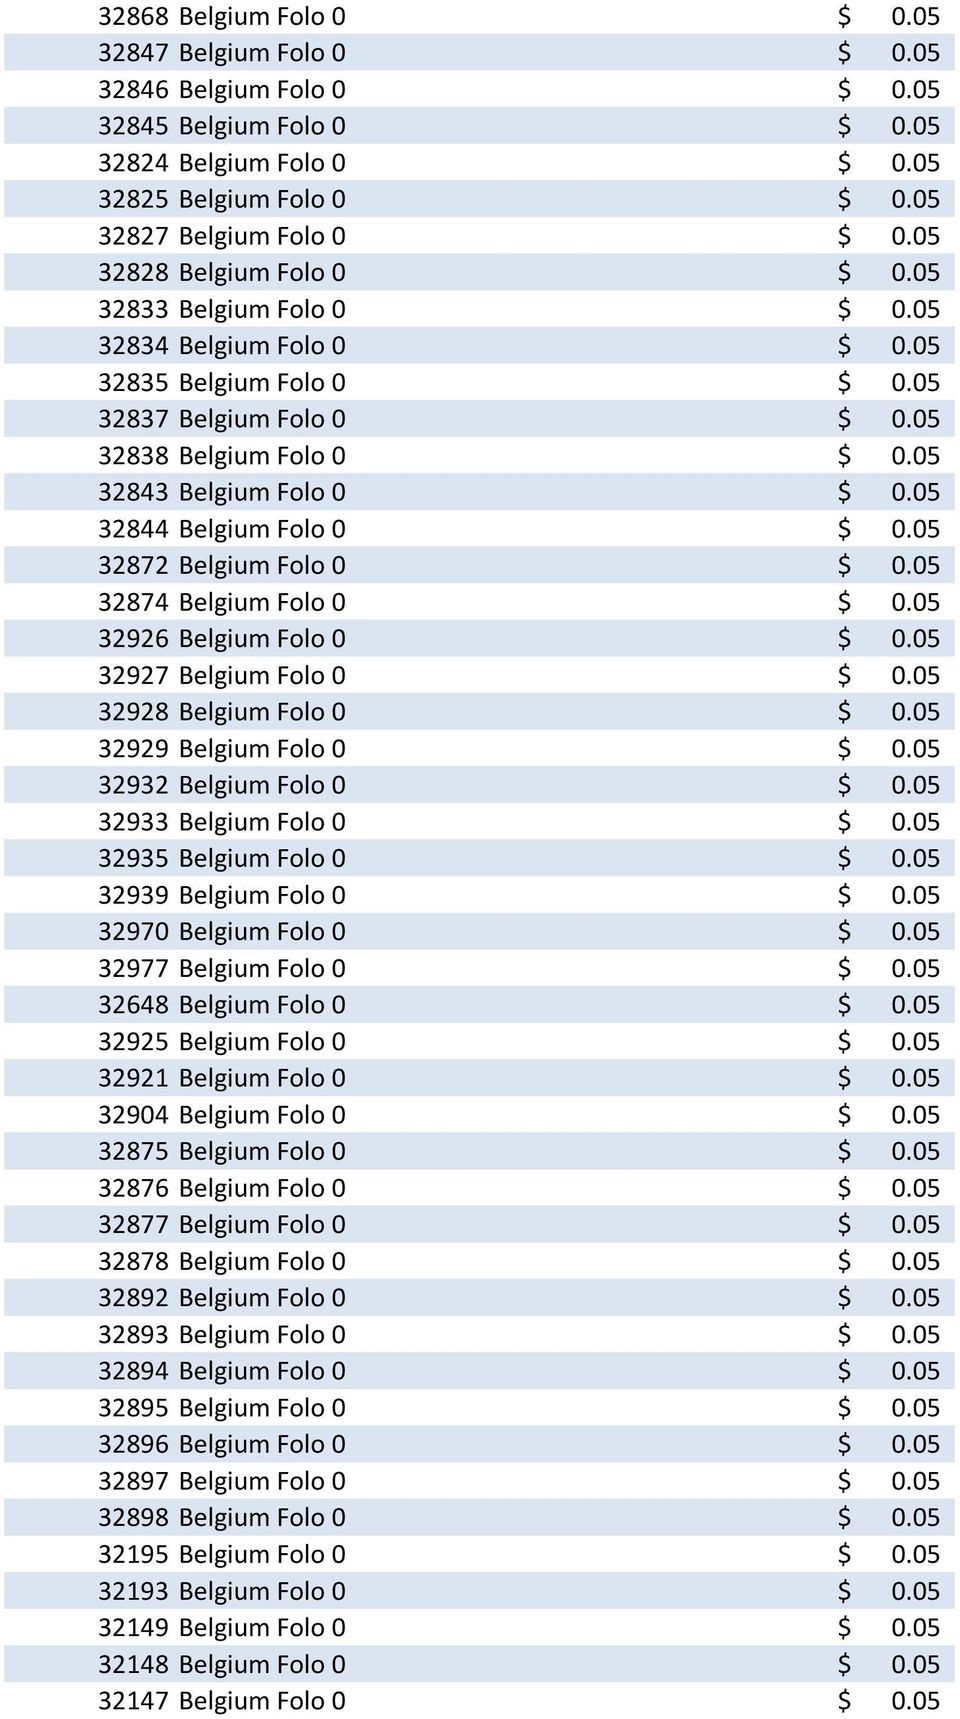 05 32844 Belgium Folo 0 $ 0.05 32872 Belgium Folo 0 $ 0.05 32874 Belgium Folo 0 $ 0.05 32926 Belgium Folo 0 $ 0.05 32927 Belgium Folo 0 $ 0.05 32928 Belgium Folo 0 $ 0.05 32929 Belgium Folo 0 $ 0.